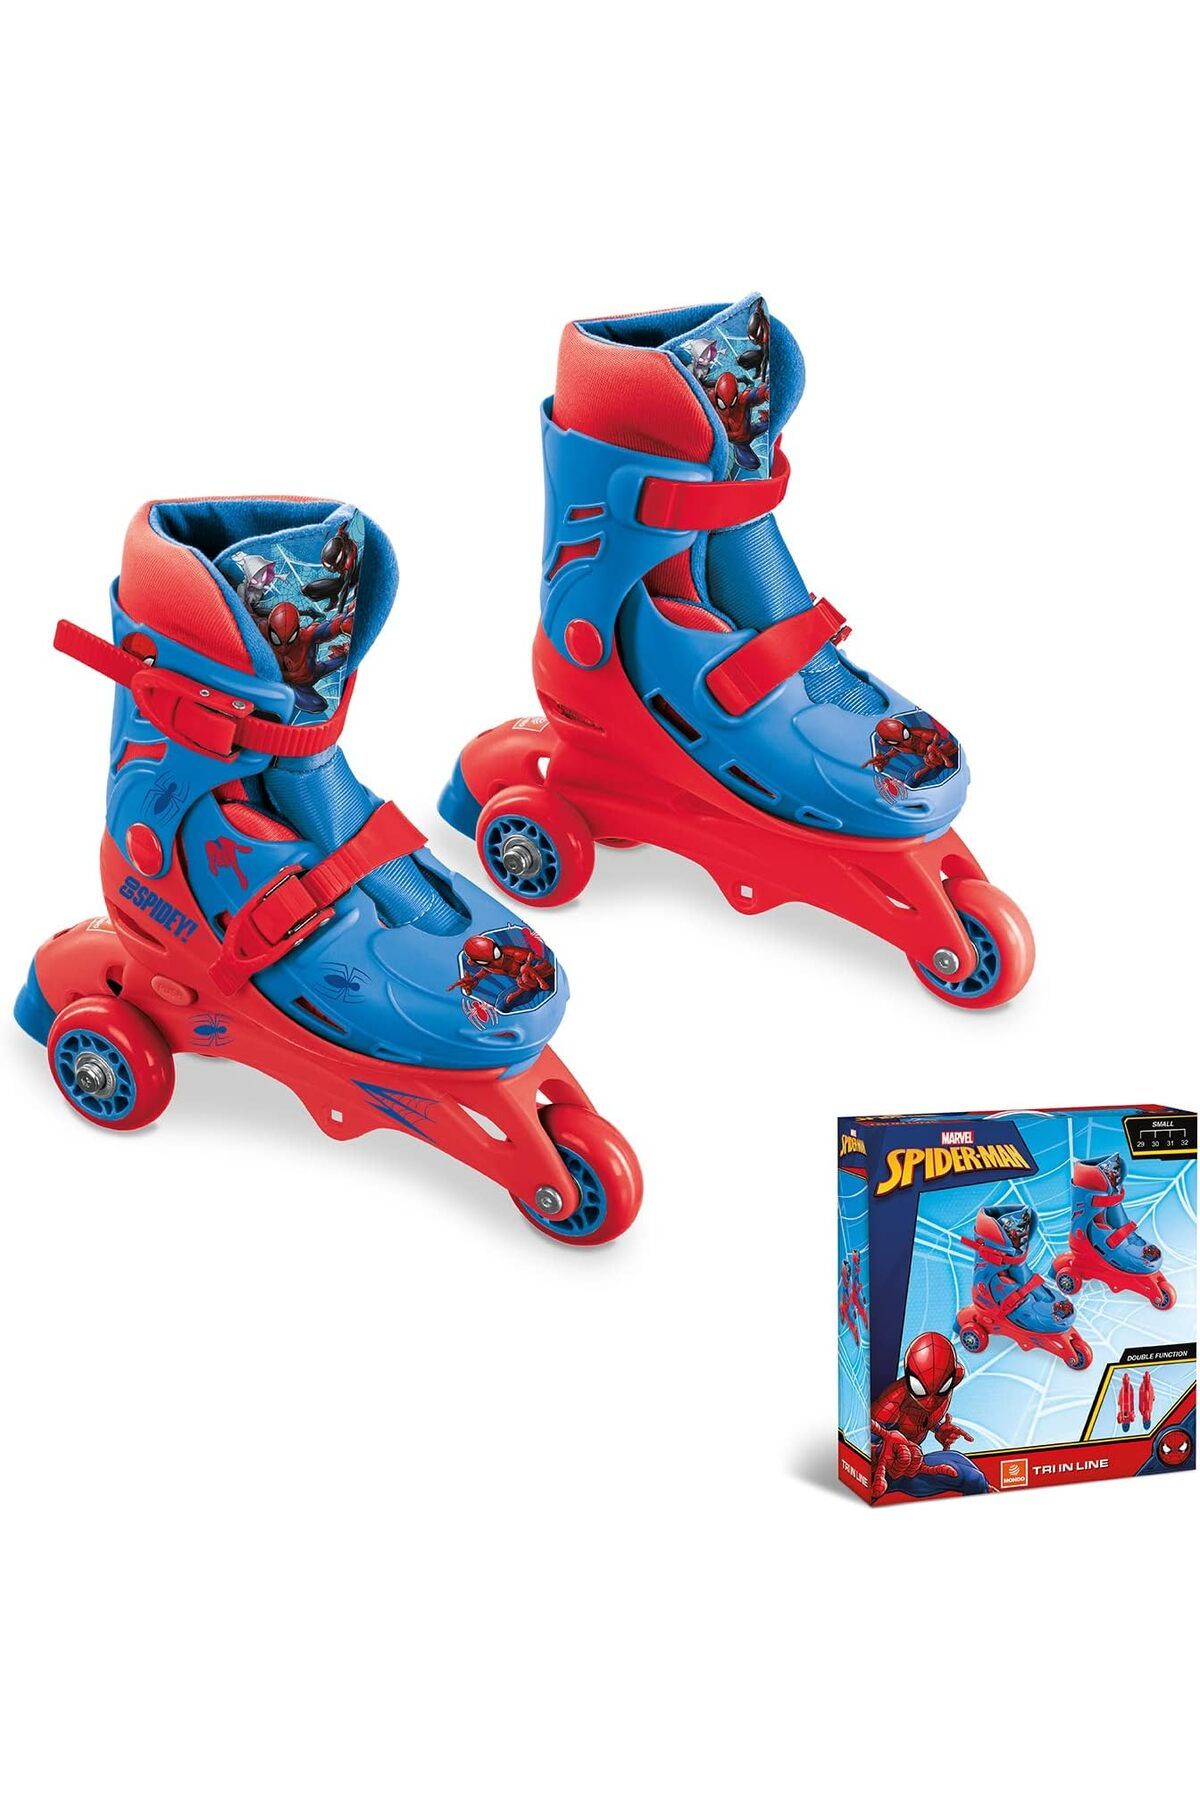 Tower Toys Spiderman Desenli Inline 3 Tekerlekli Paten 29 Numaradan 32 Numaraya Kadar Ayarlanabilir Paten